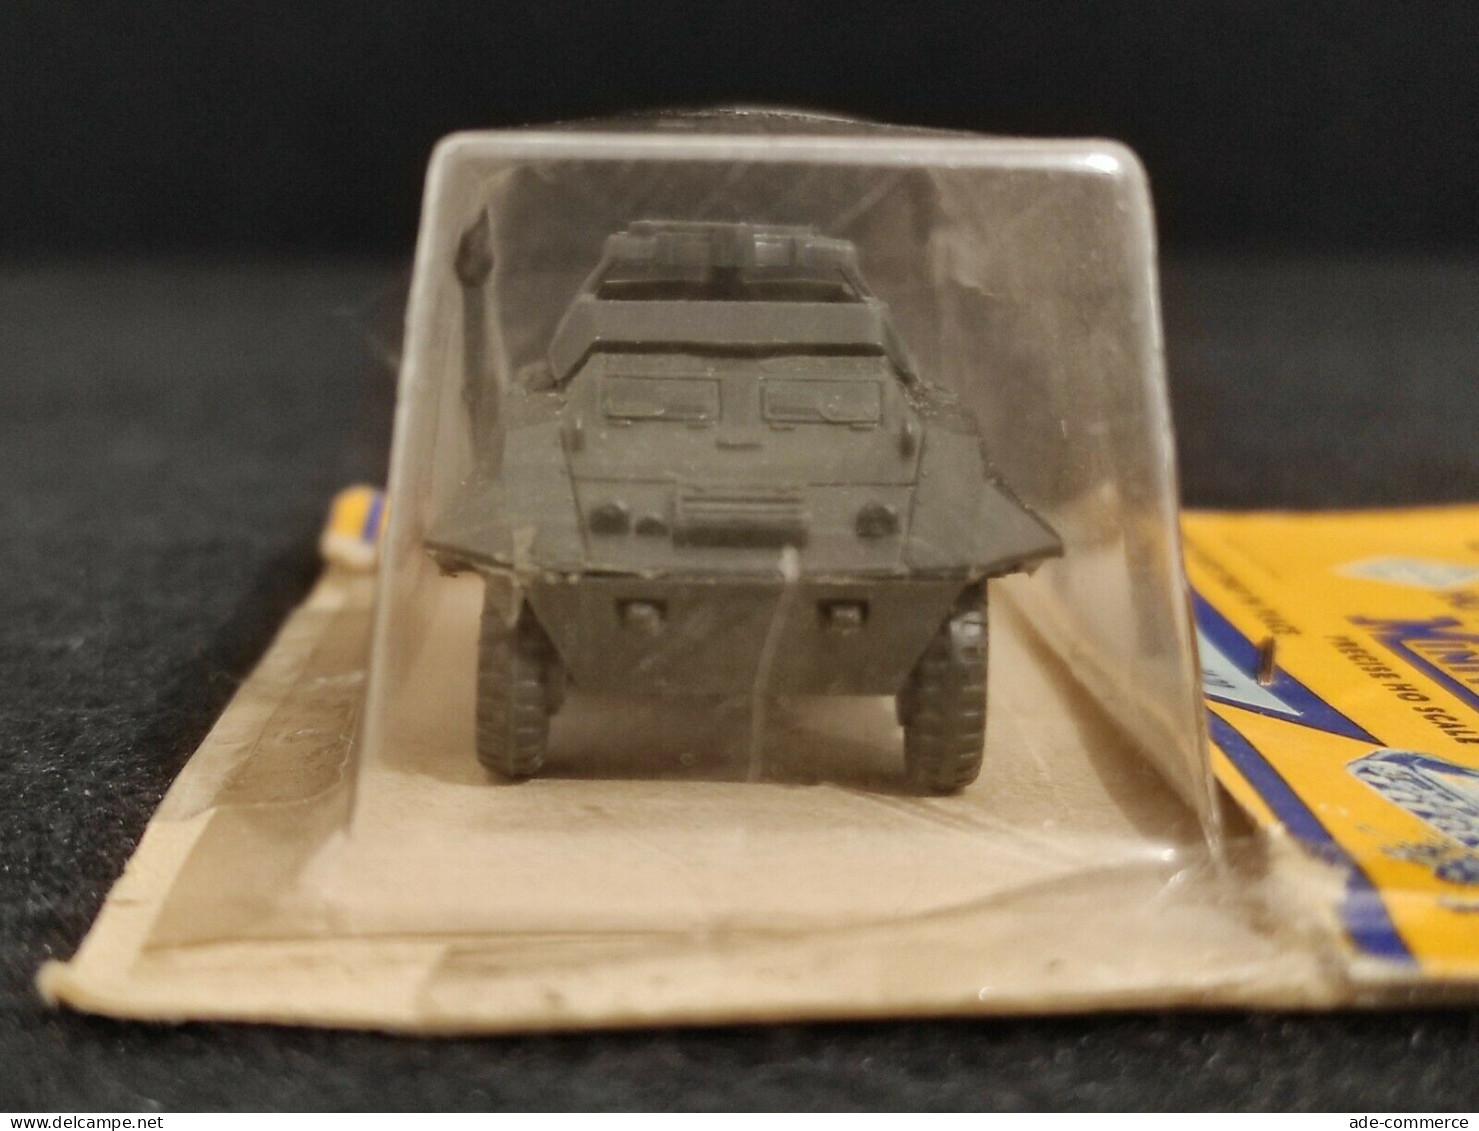 Roco Model Miniatures MiniTanks - 204 - US Commandcar M20 - Modellino Militare - Andere & Zonder Classificatie